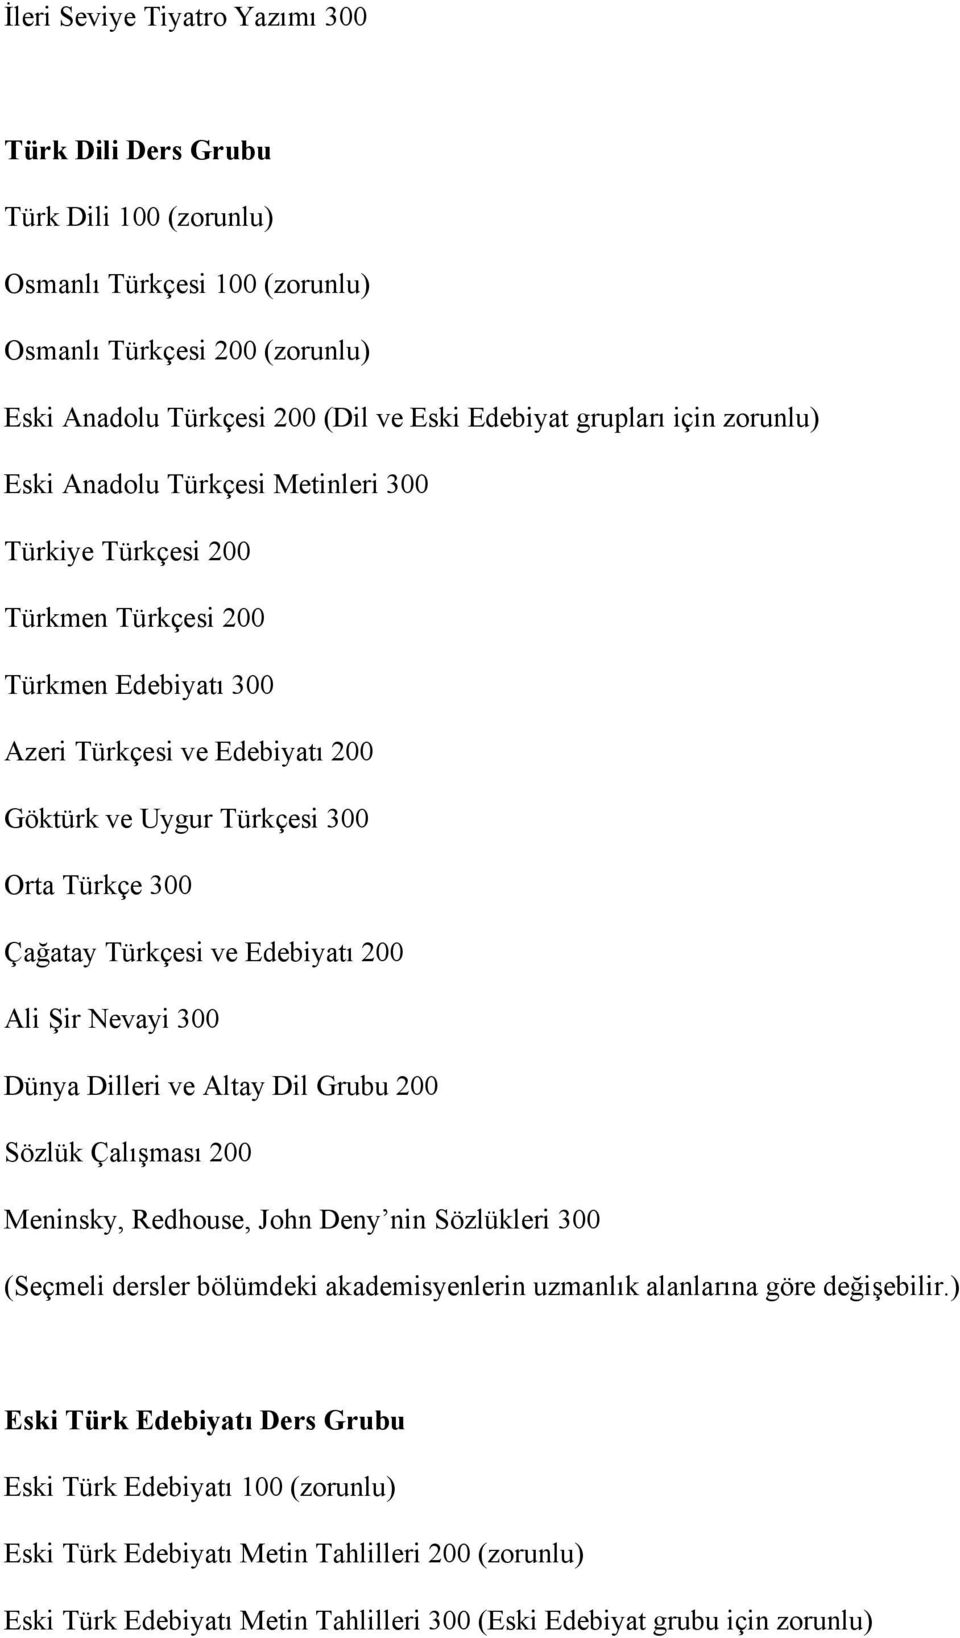 Türkçesi ve Edebiyatı 200 Ali Şir Nevayi 300 Dünya Dilleri ve Altay Dil Grubu 200 Sözlük Çalışması 200 Meninsky, Redhouse, John Deny nin Sözlükleri 300 (Seçmeli dersler bölümdeki akademisyenlerin